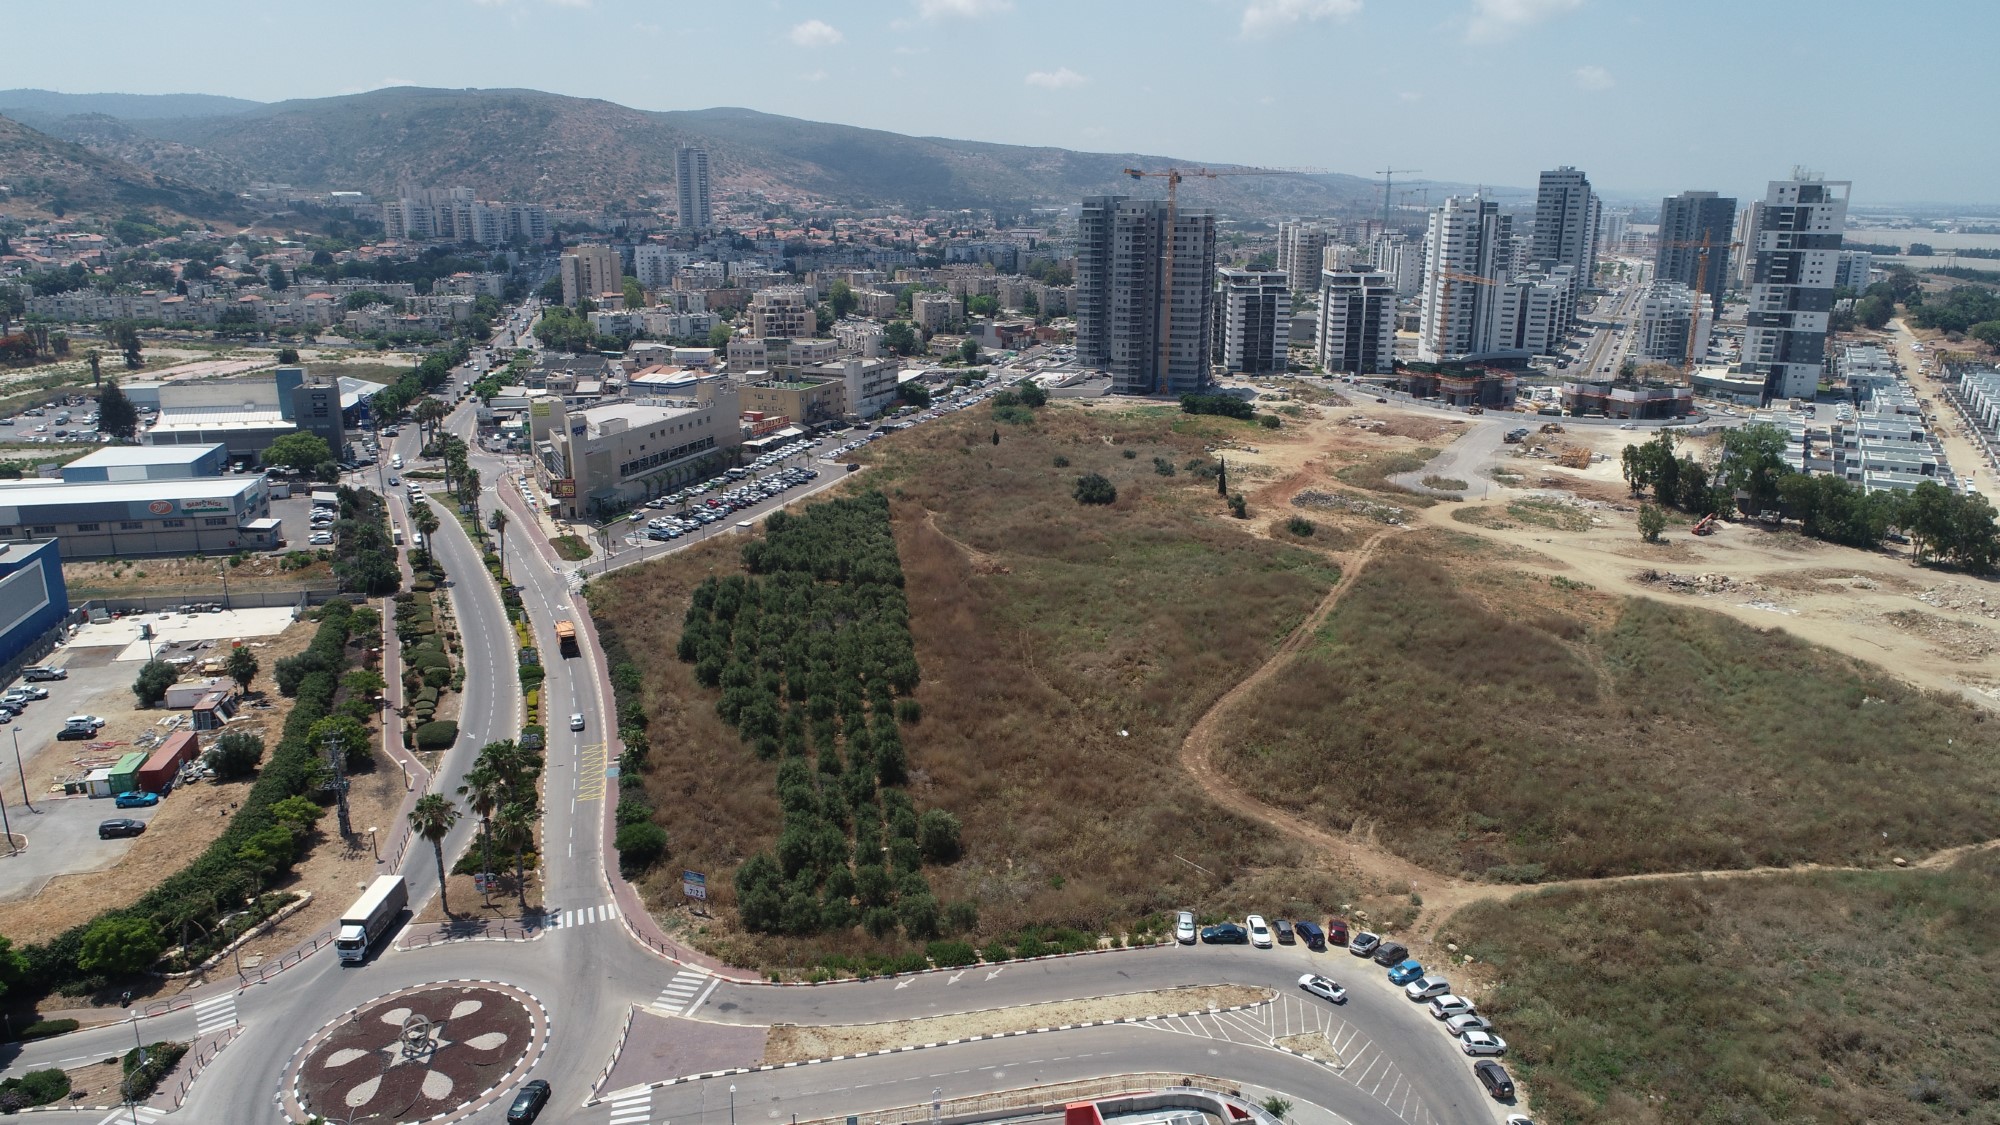 אתר יד2 חושף: טירת הכרמל היא הפתעת העשור בתחום הבנייה למגורים בישראל